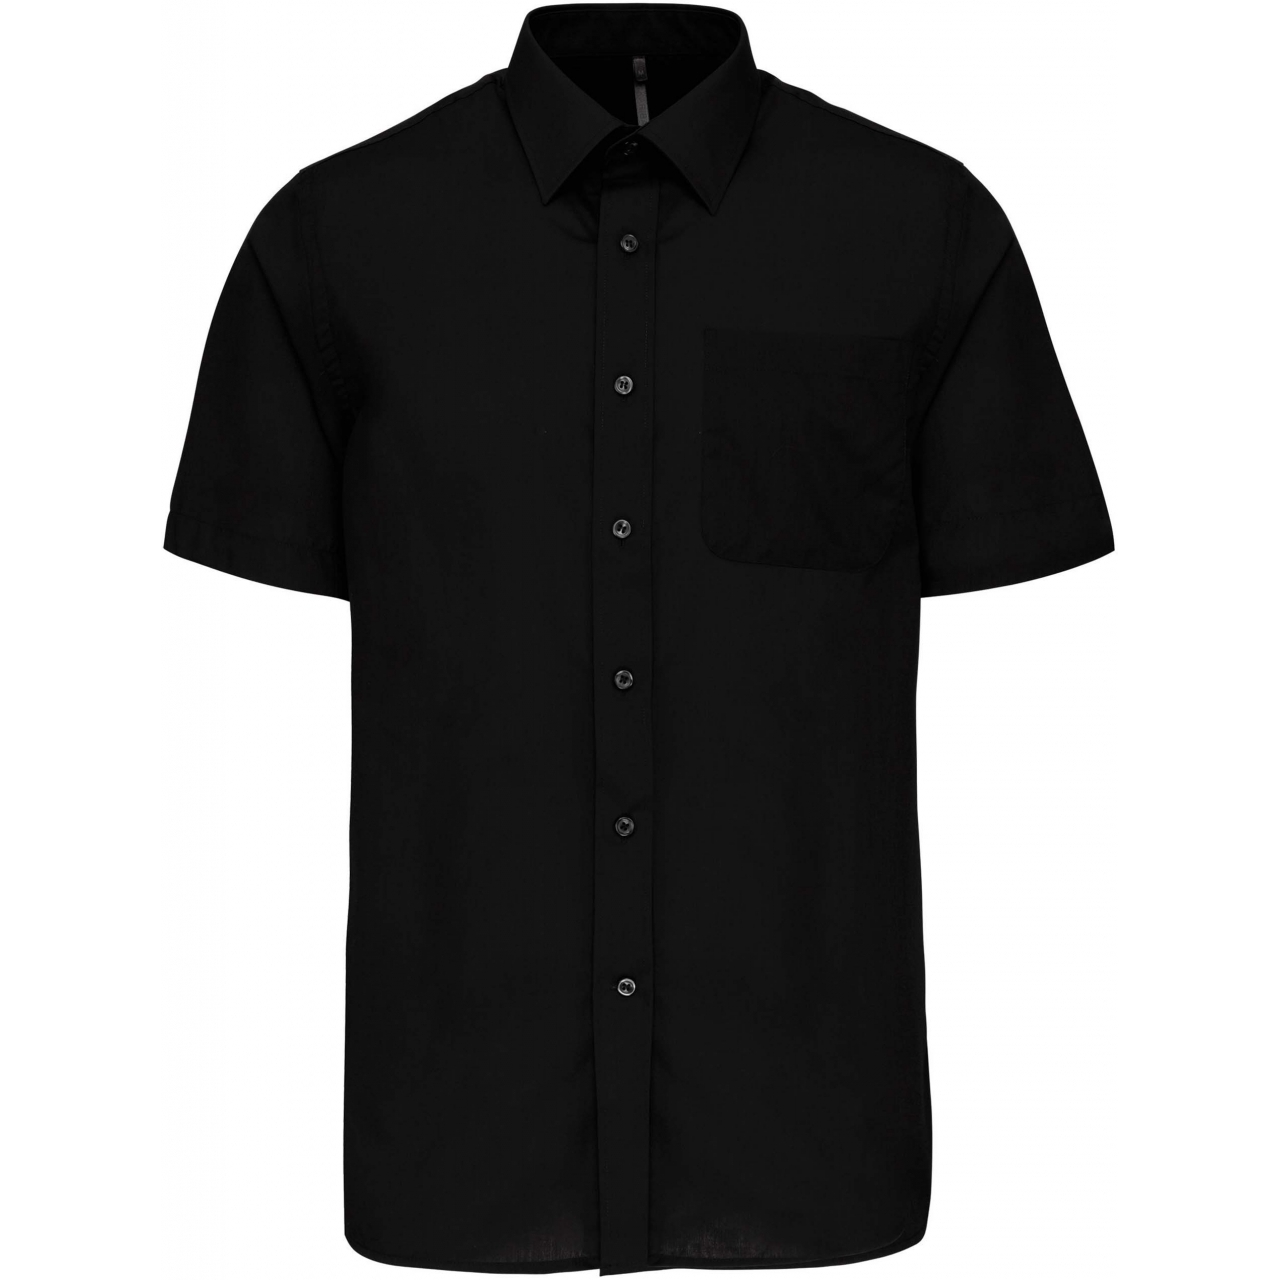 Pánská košile s krátkým rukávem Kariban ACE - černá, XL